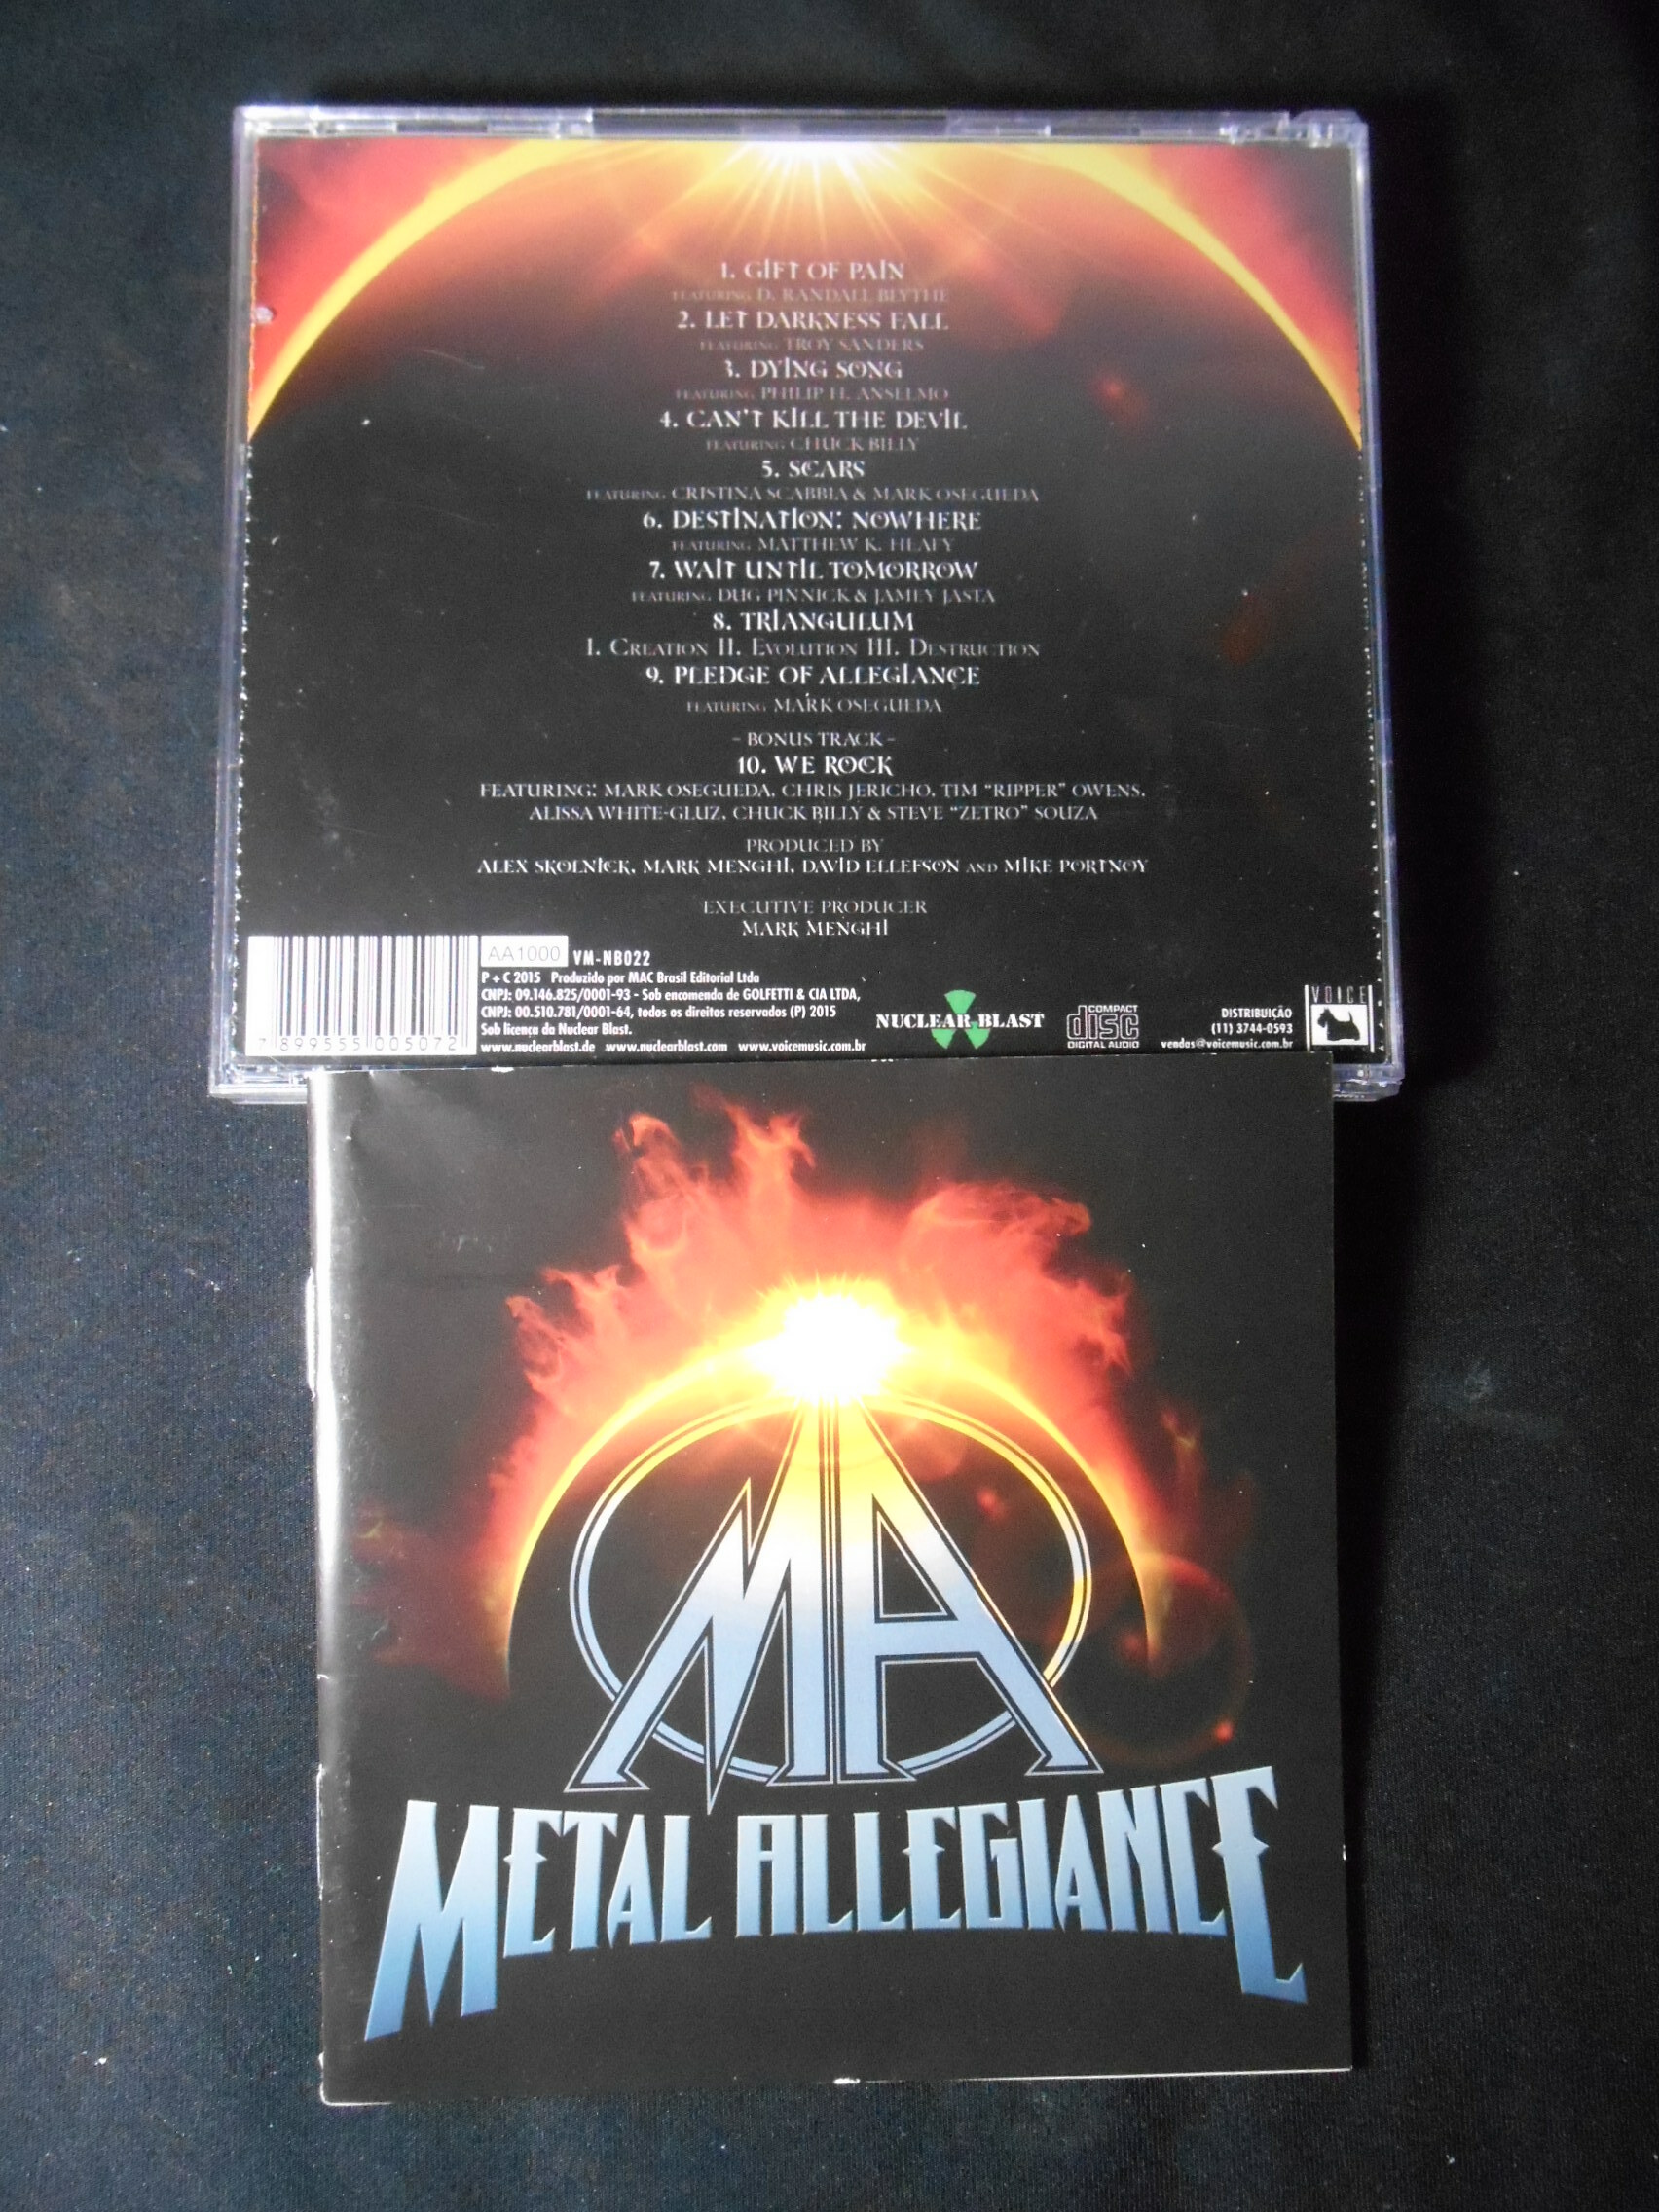 CD - Metal Allegiance - 2015